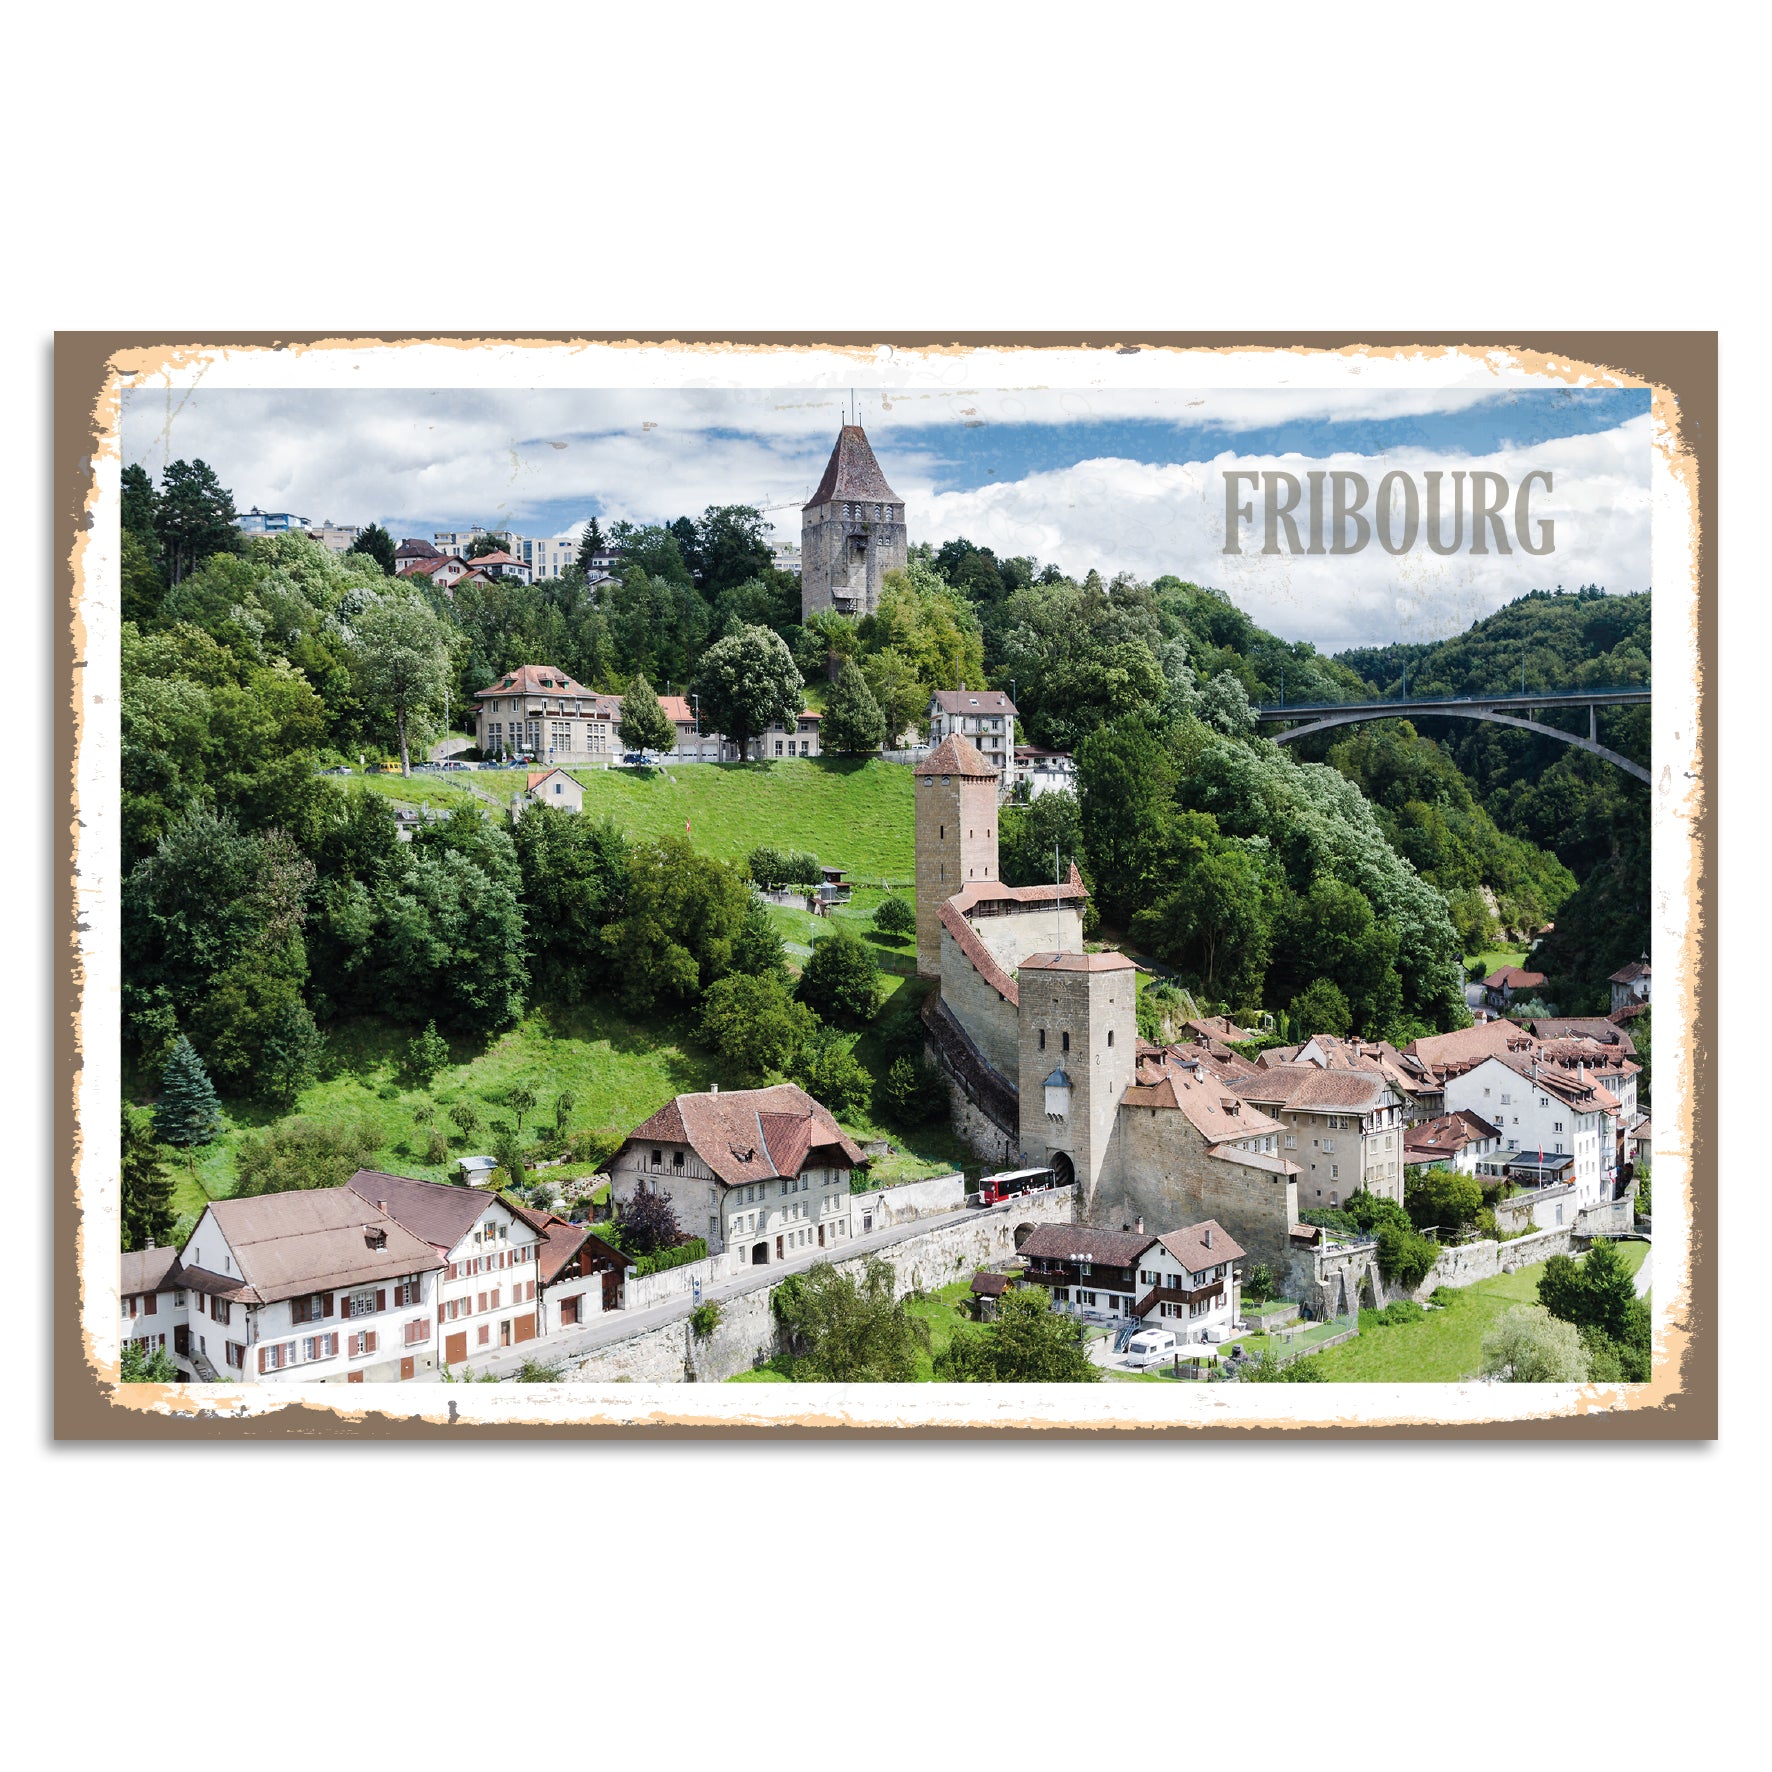 Blechschild - Fribourg